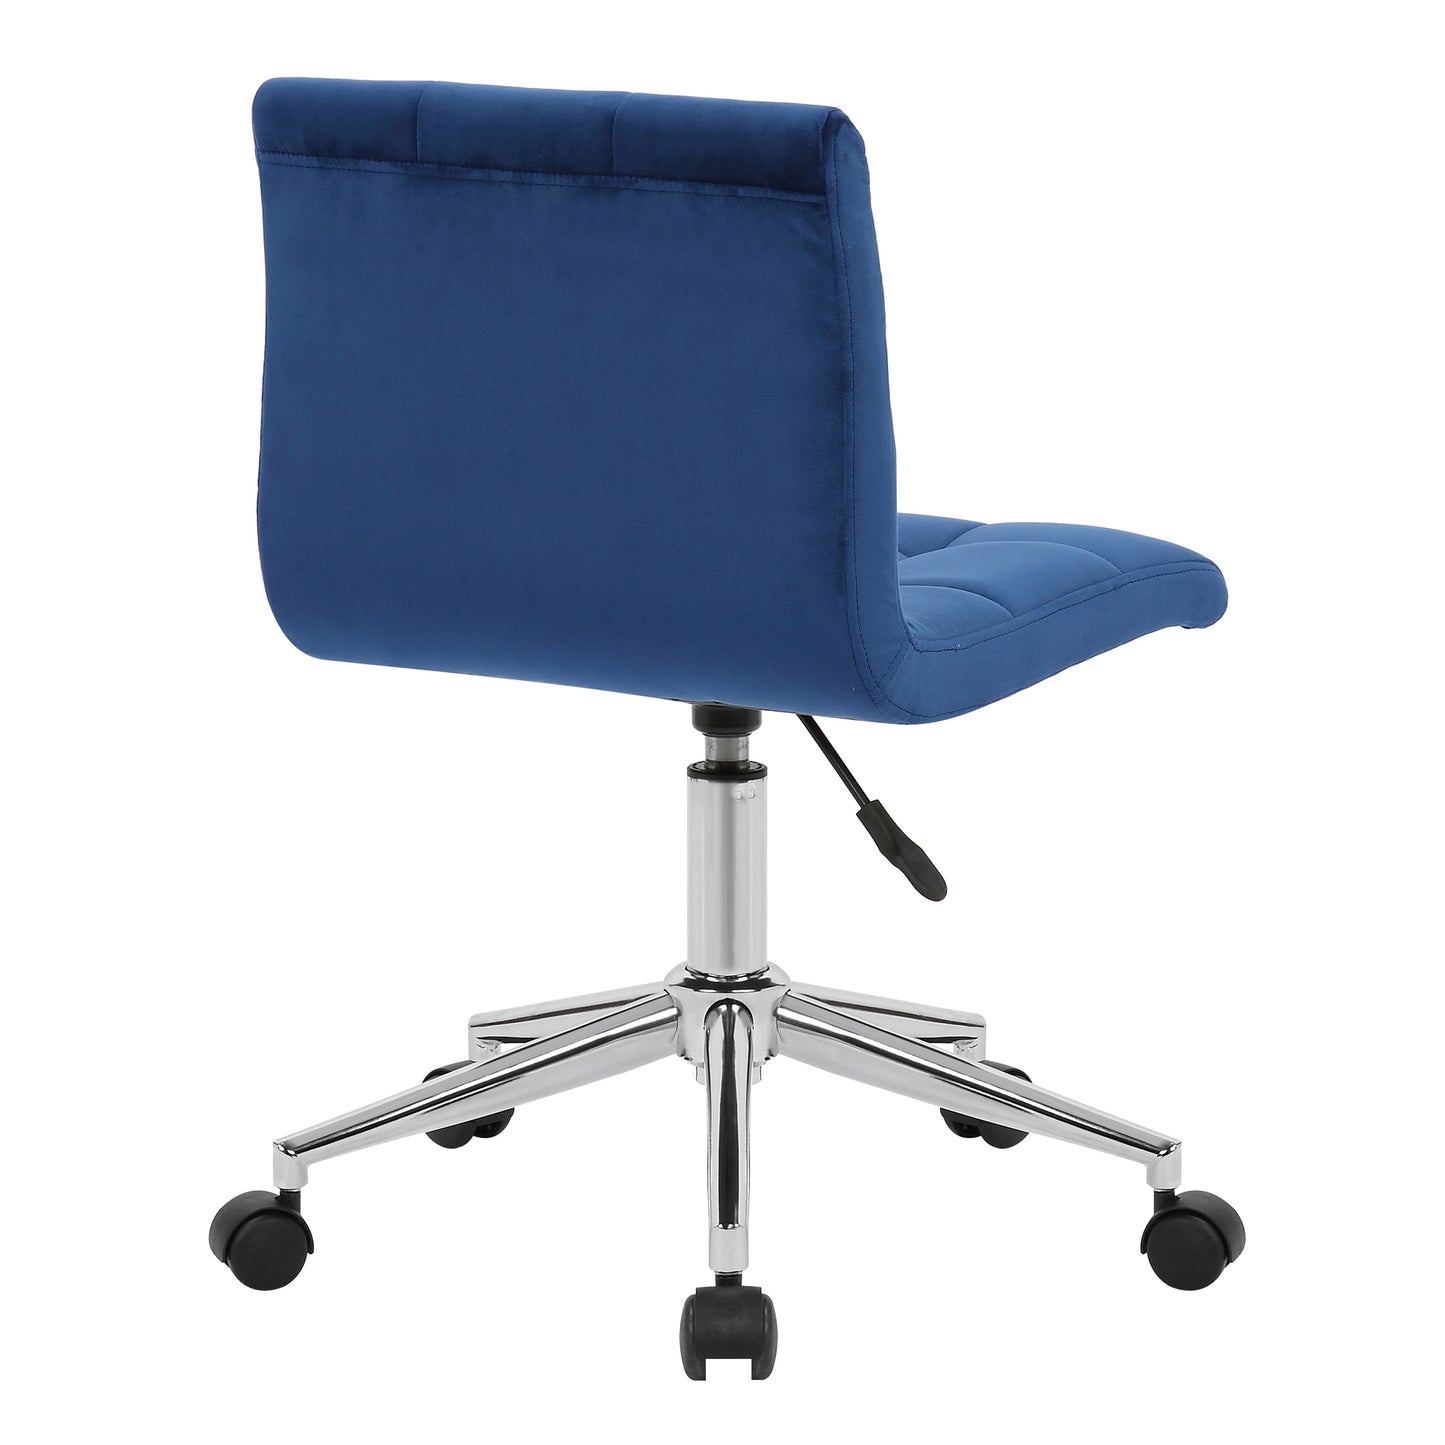 Amali Blue Velvet Upholstered Adjustable Height Swivel Office Chair with Wheel Base